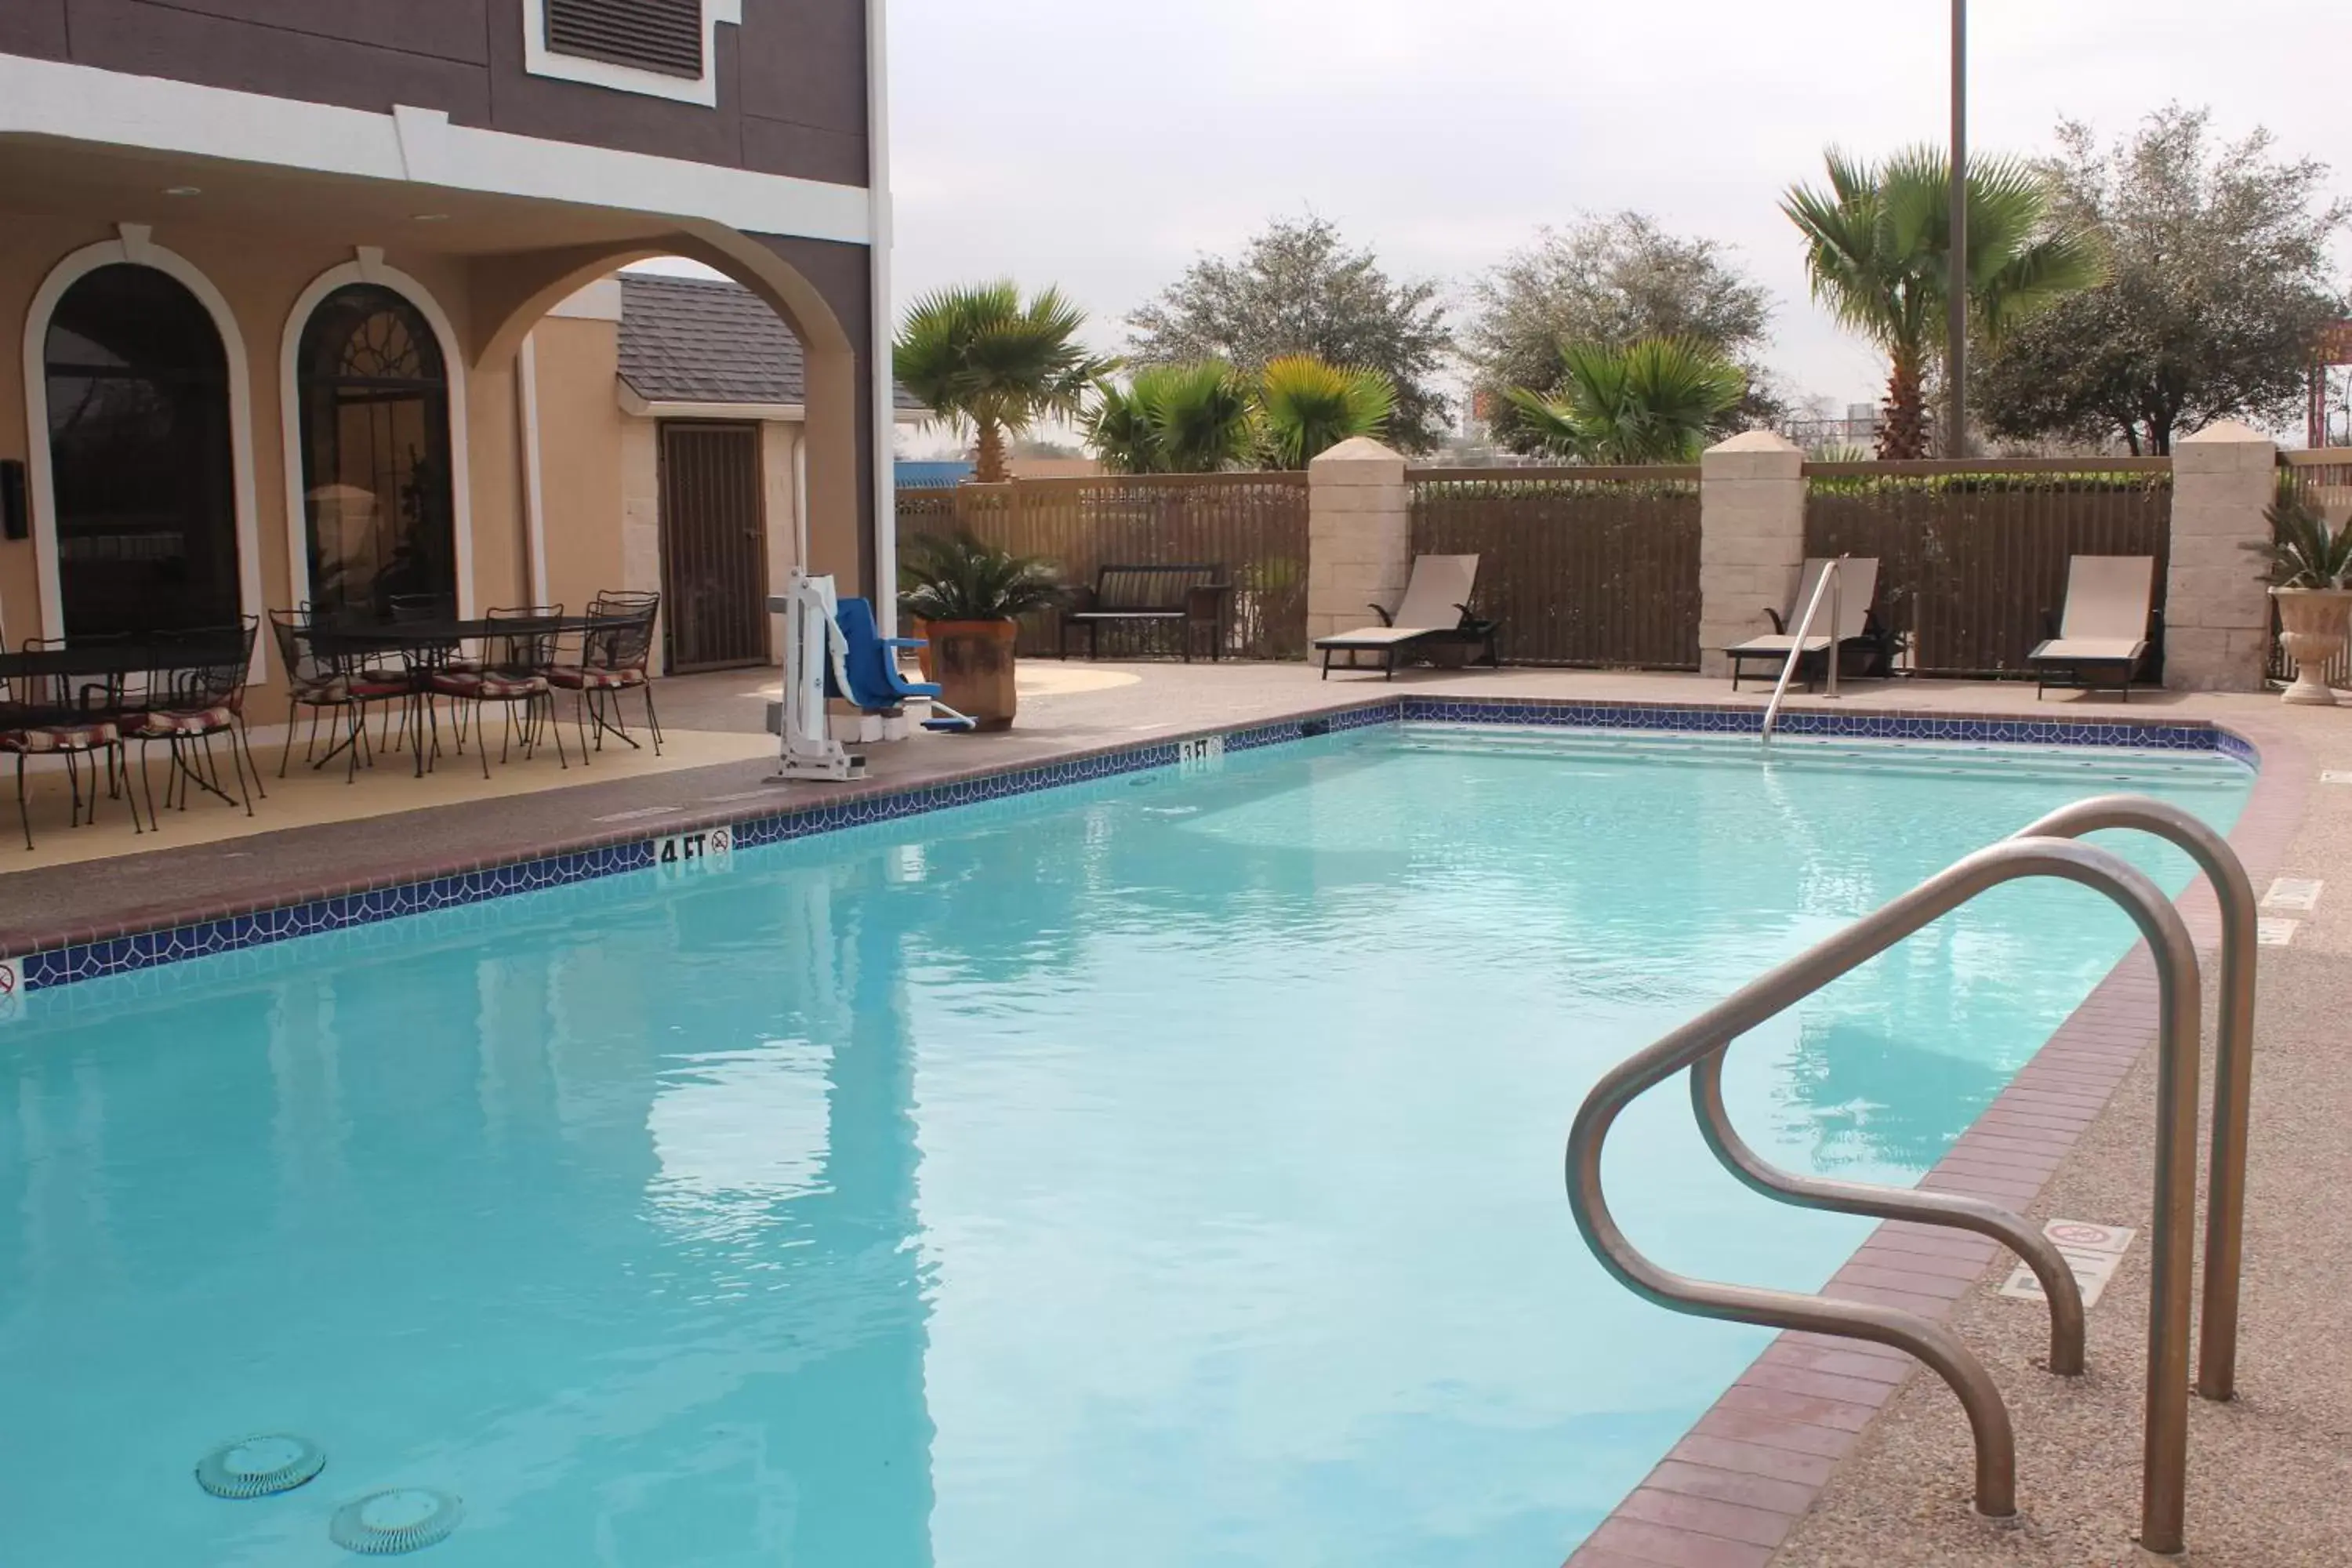 Patio, Swimming Pool in Best Western Plus Heritage Inn Houston